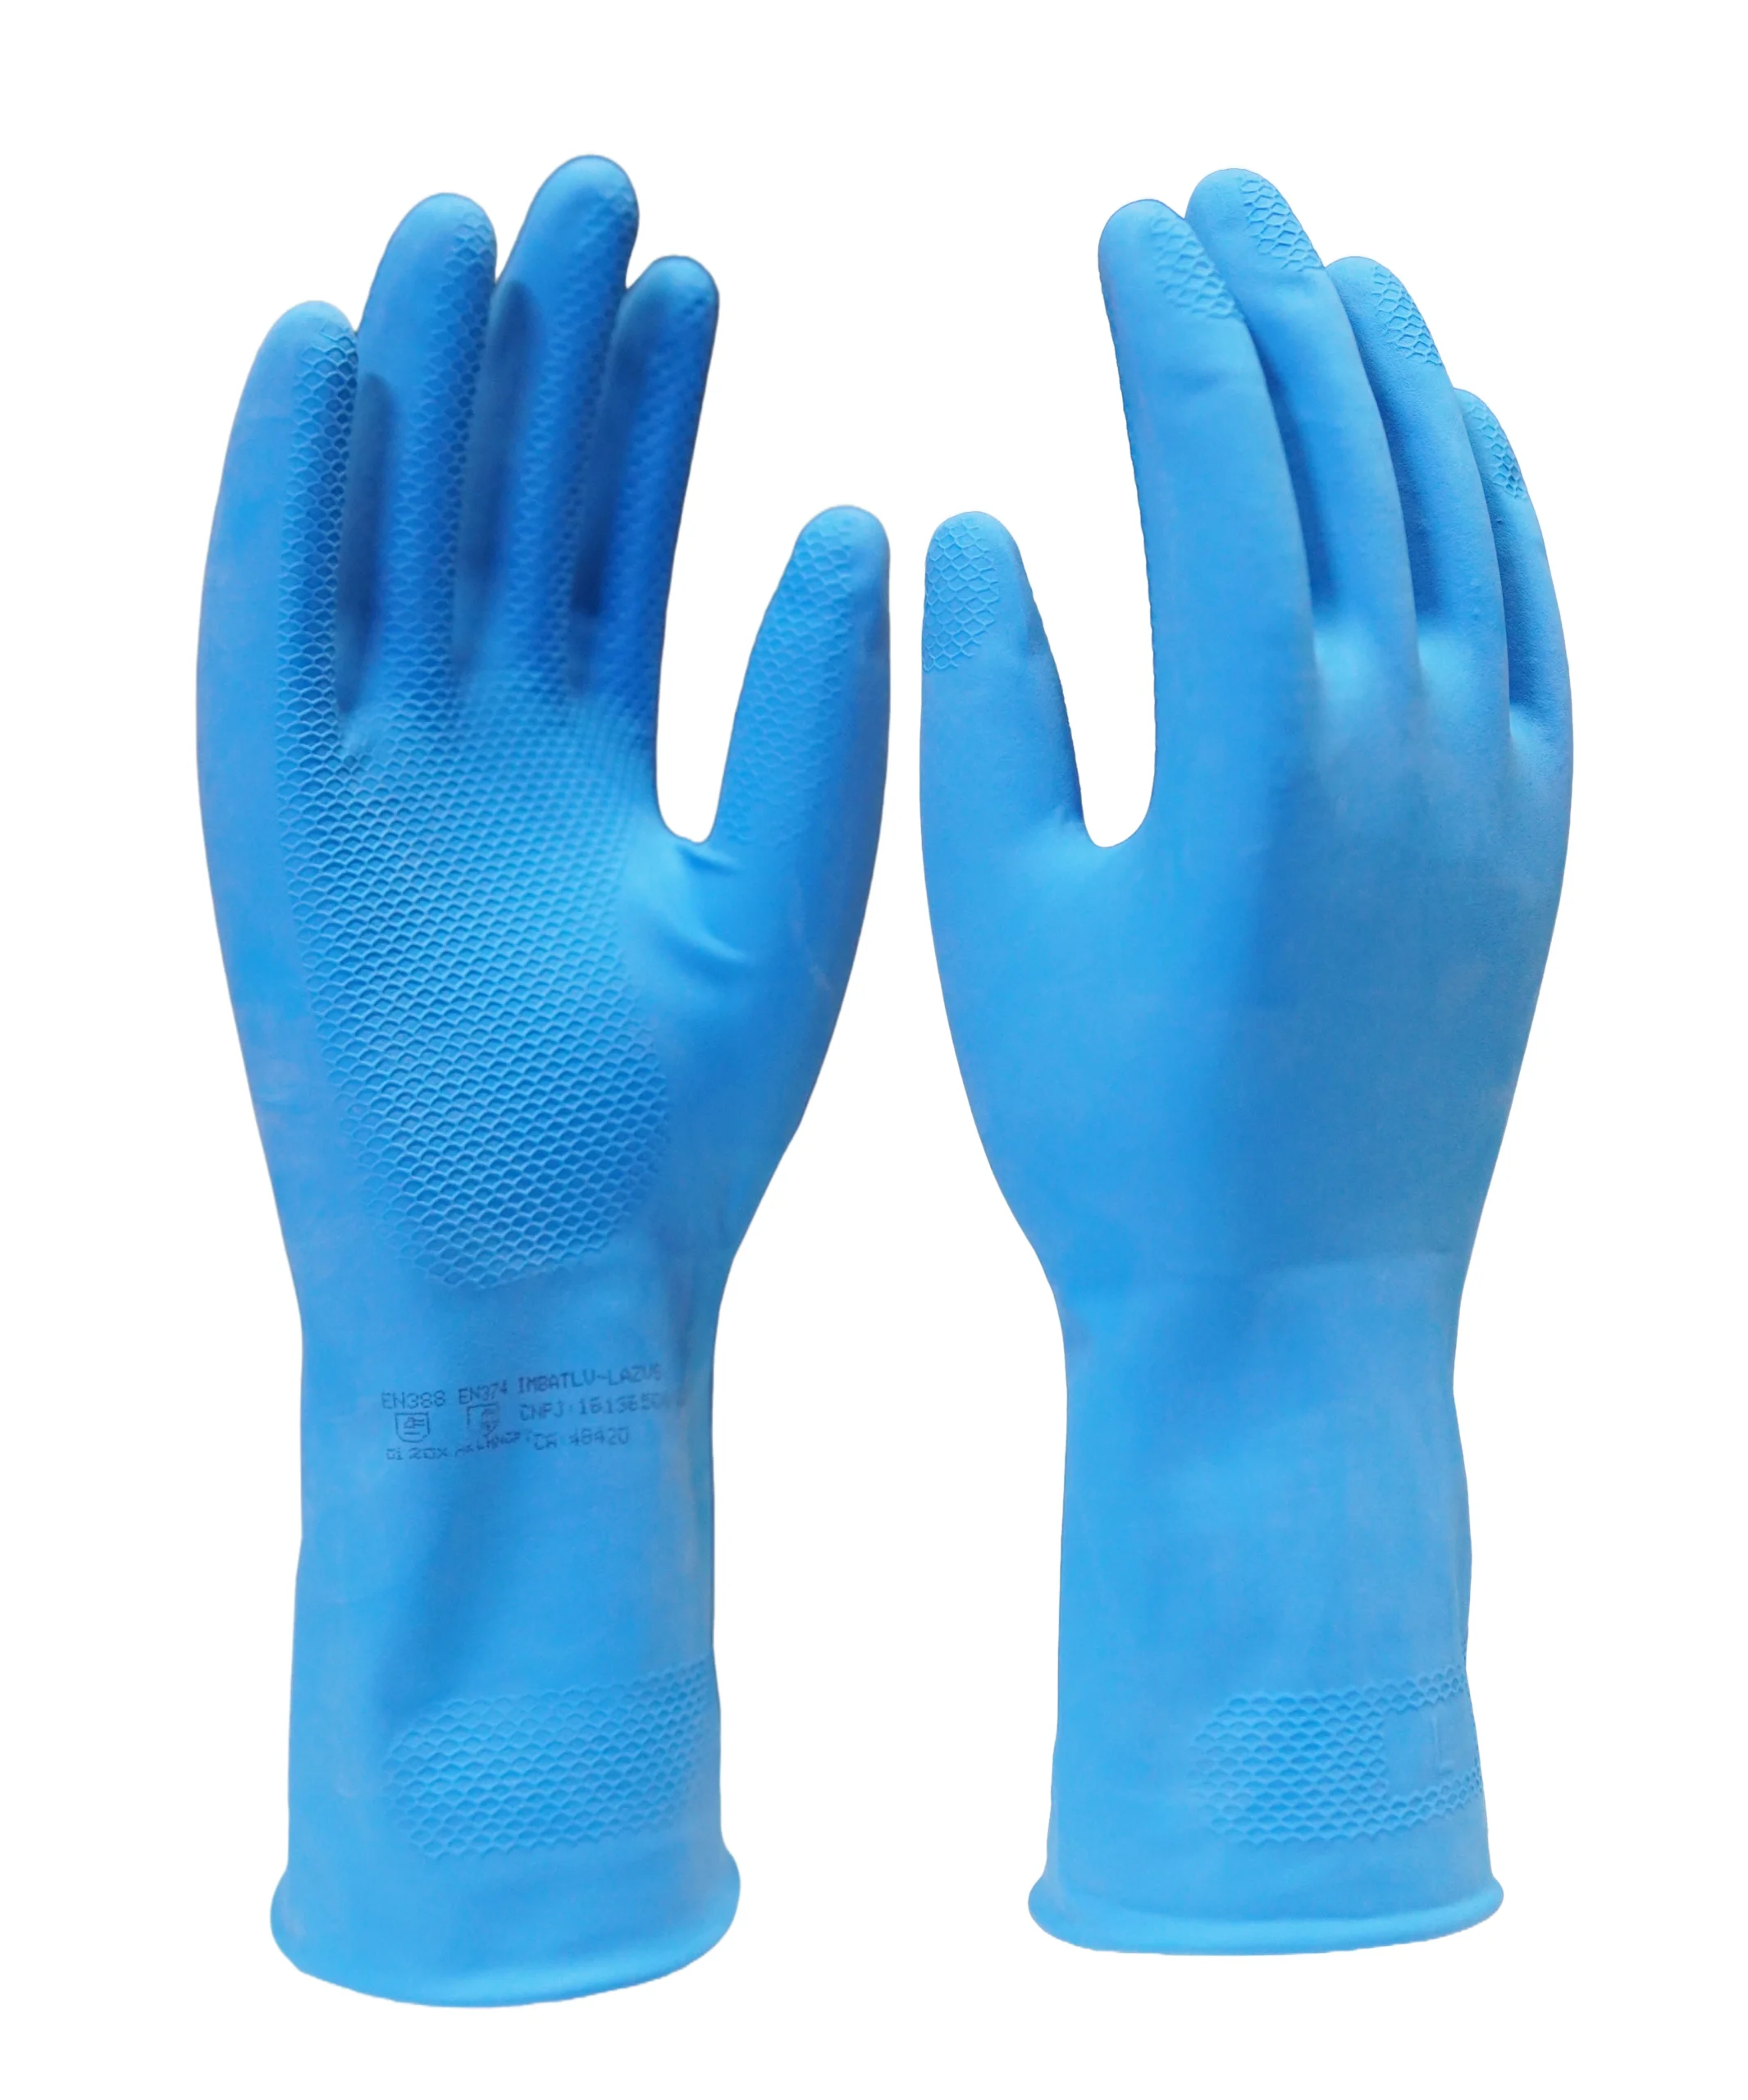 Luva de segurança confeccionada em látex natural na cor azul, revestimento interno em verniz Silver, antiderrapante na palma e face palmar dos dedos. Tamanhos꞉ 7, 8, 9 e 10.